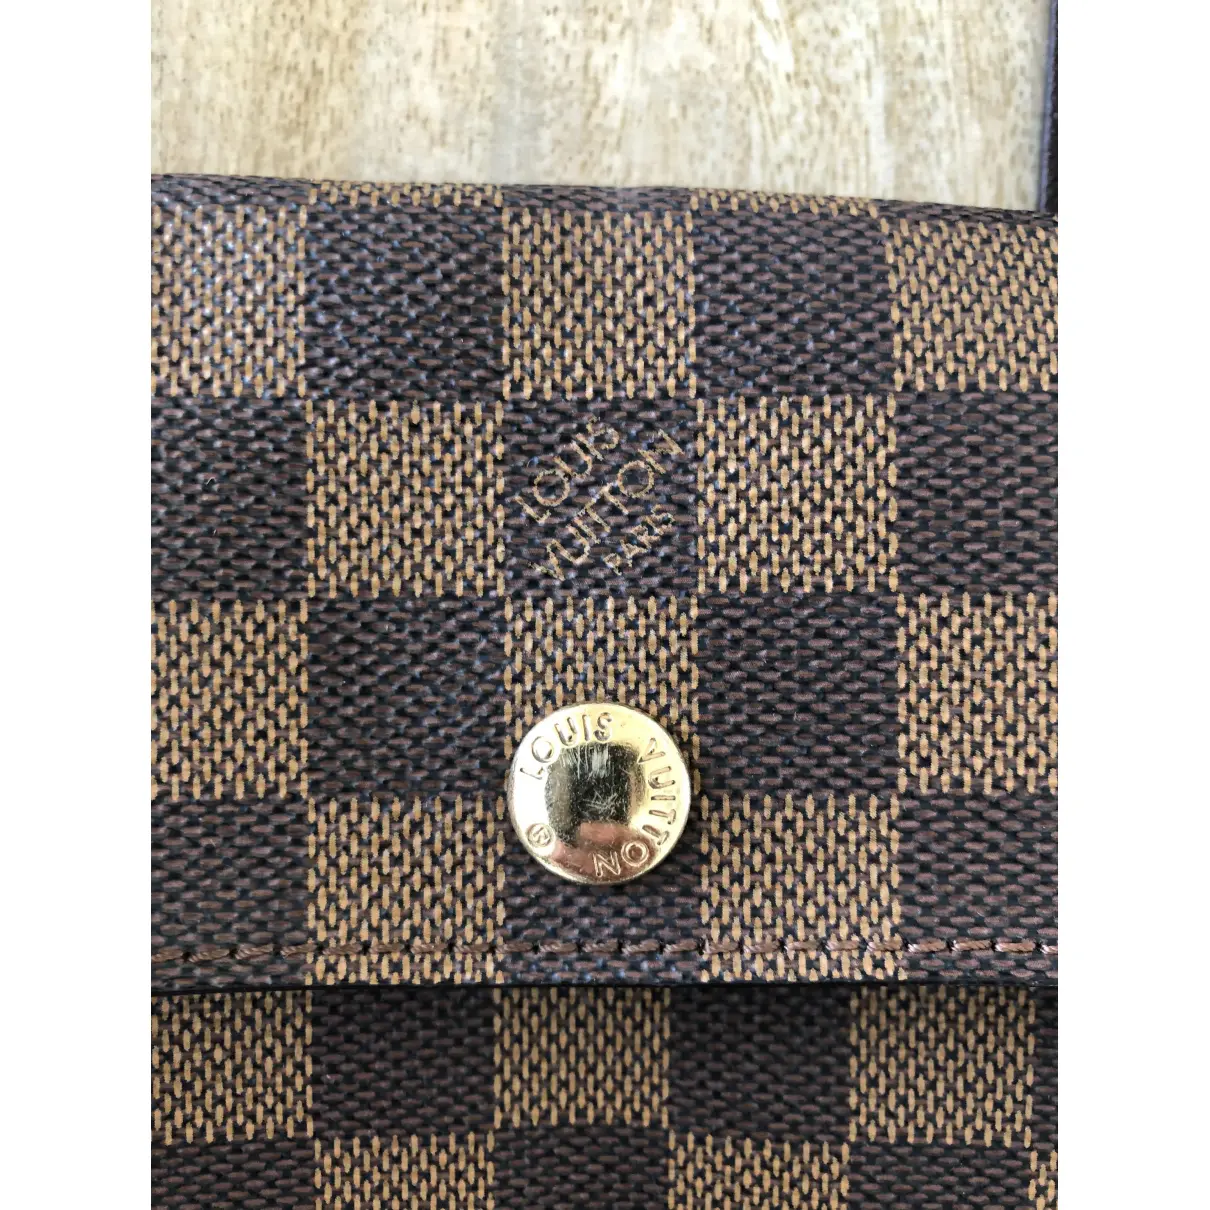 Pimlico cloth handbag Louis Vuitton - Vintage